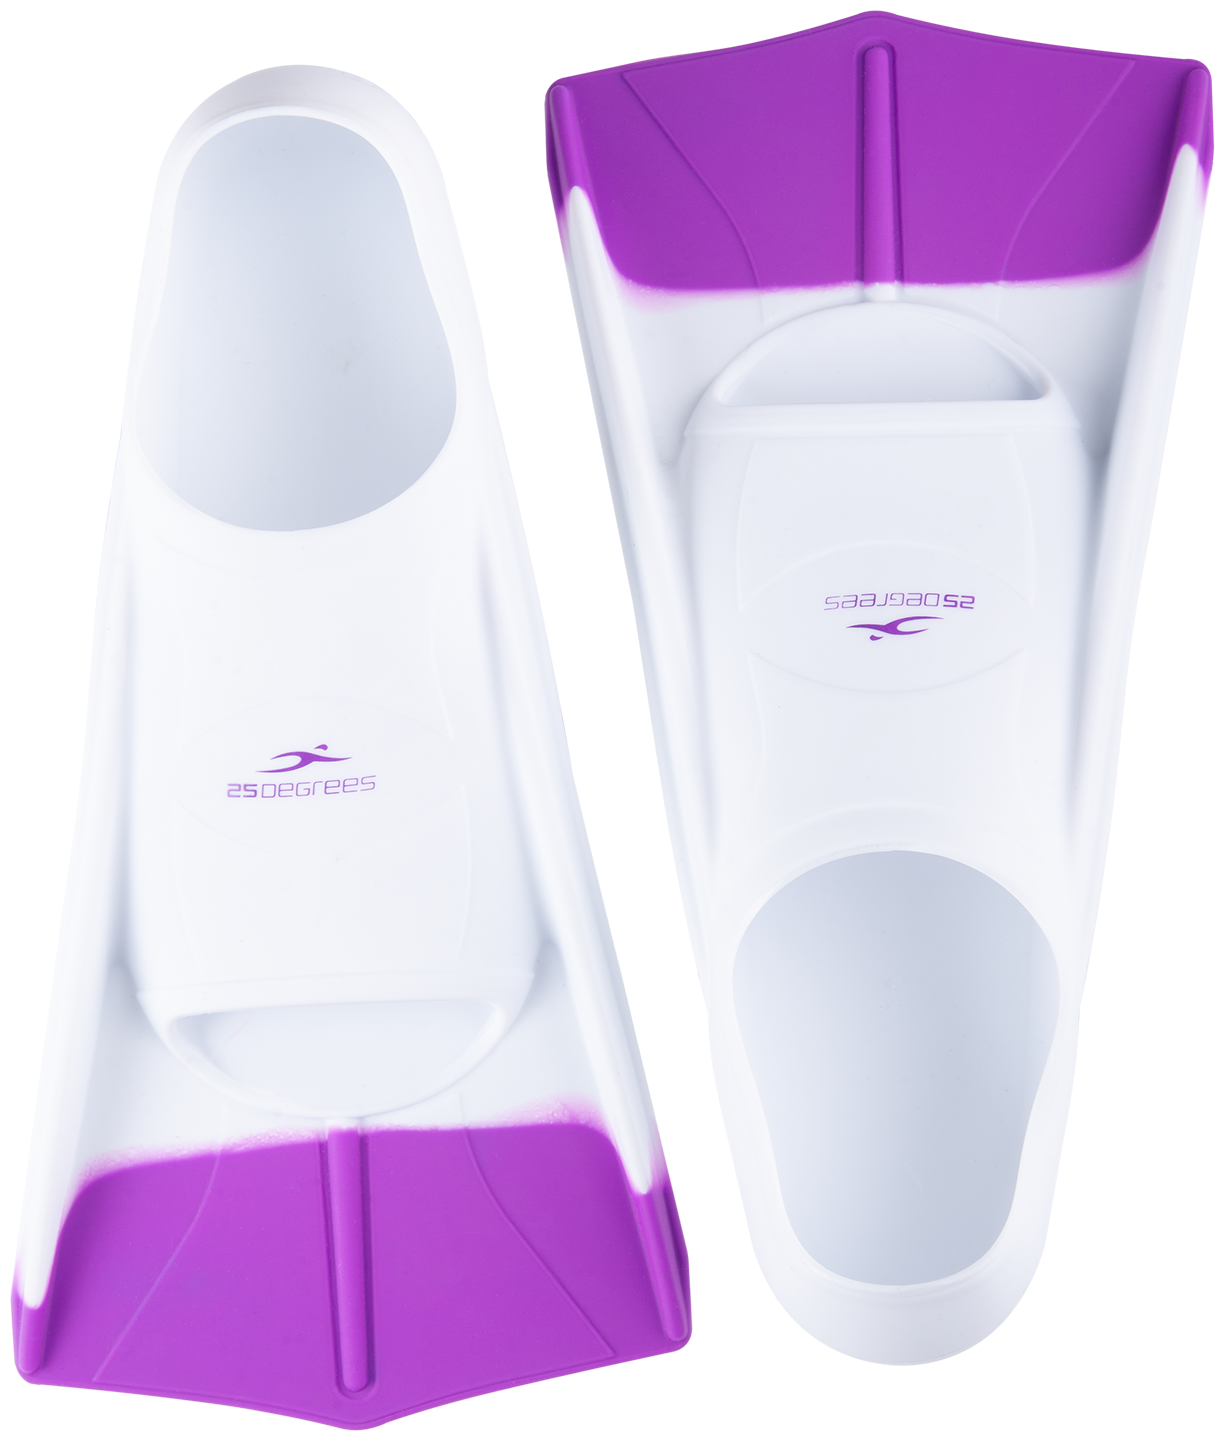 Ласты тренировочные 25degrees Pooljet White/purple, S